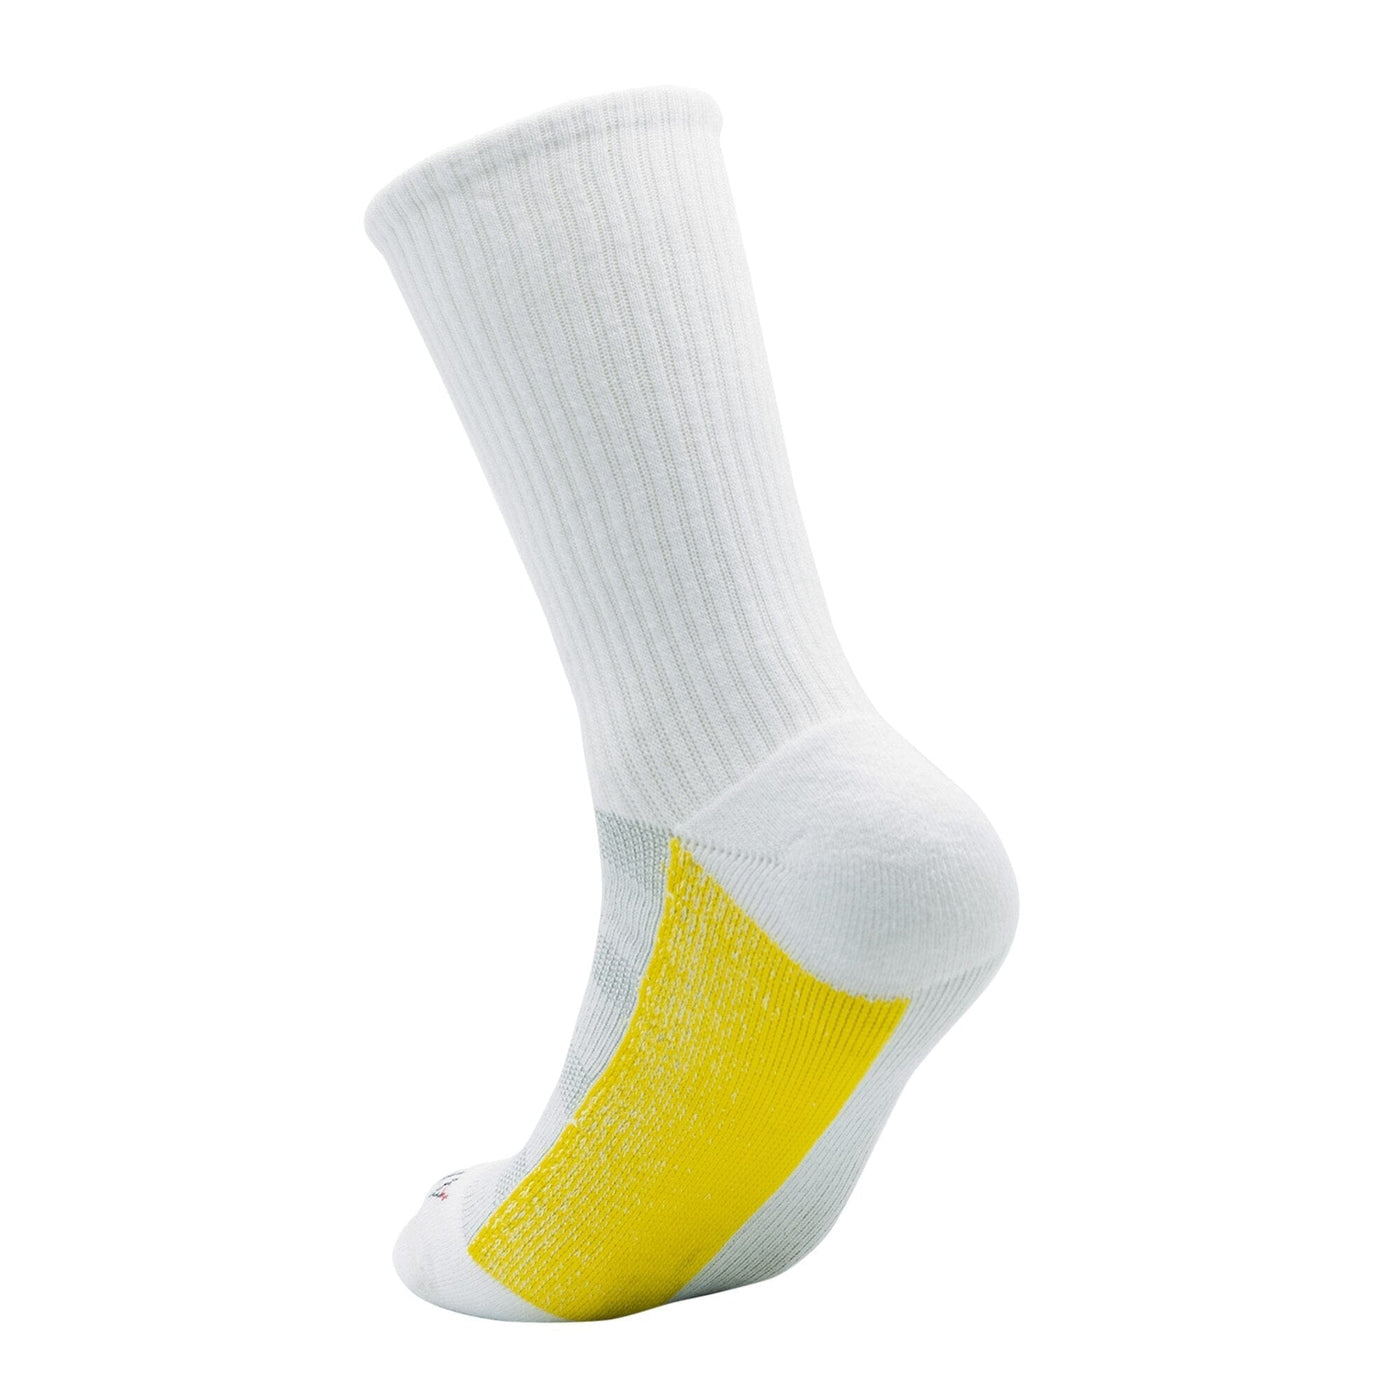 ArchTek® Crew Socks (4 Pack White) athletic socks ArchTek 